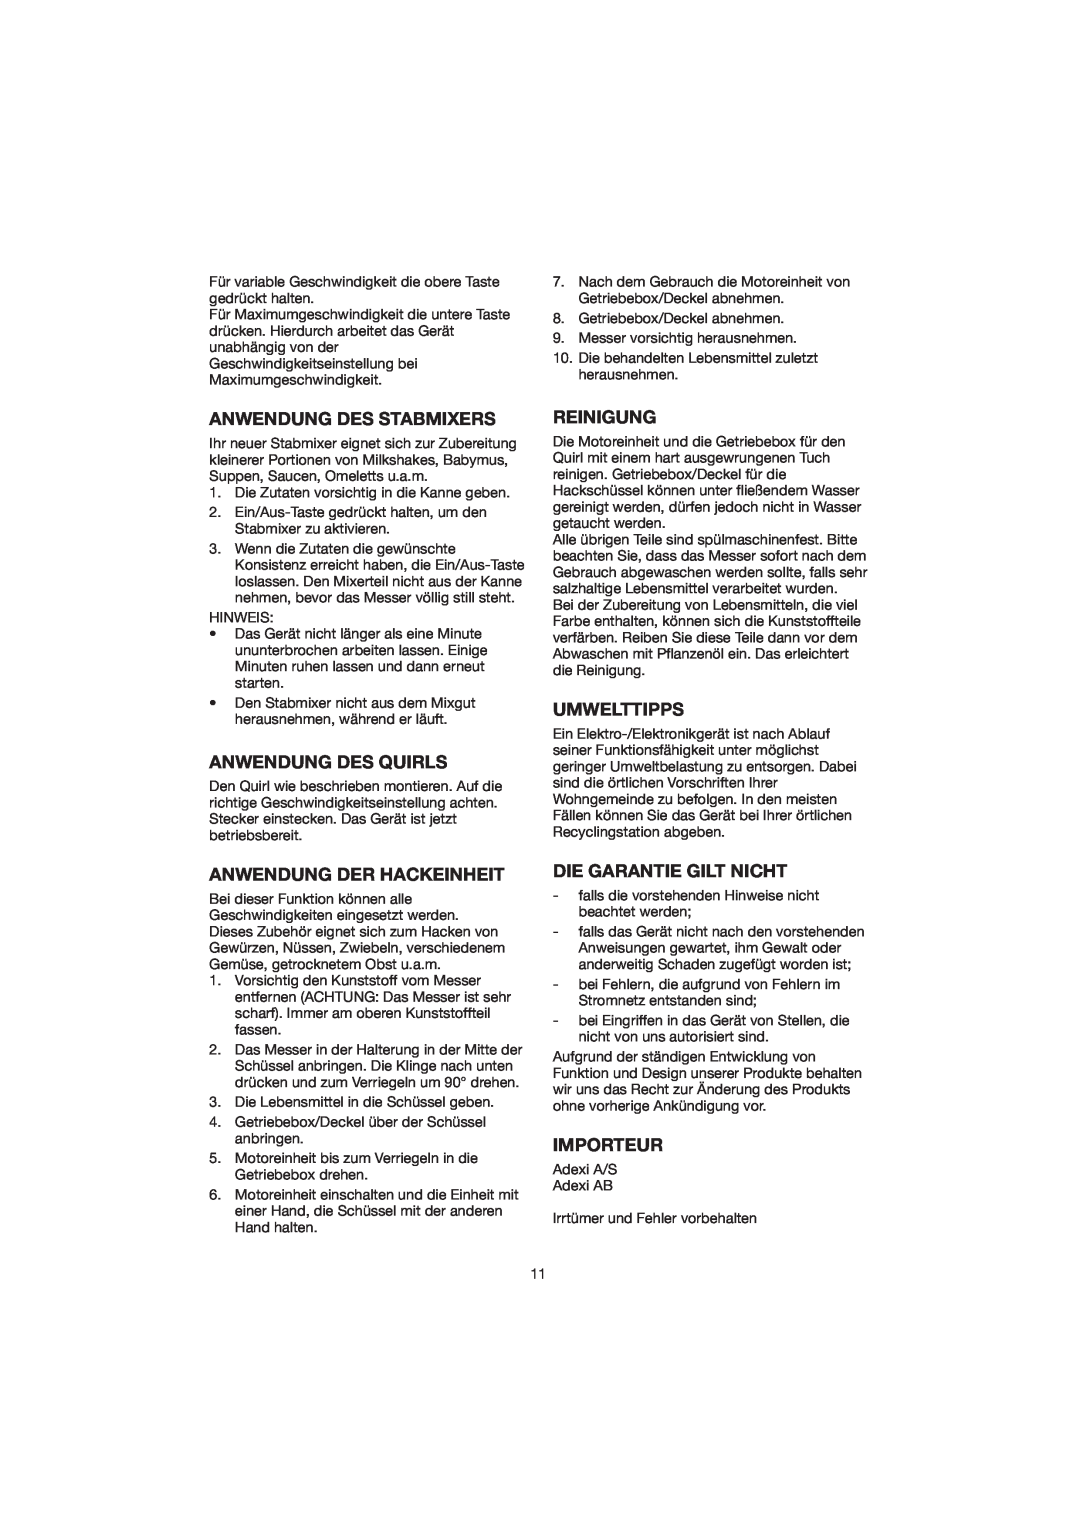 Melissa GMT-032BD manual Anwendung Des Stabmixers, Anwendung Des Quirls, Reinigung, Umwelttipps, Anwendung Der Hackeinheit 